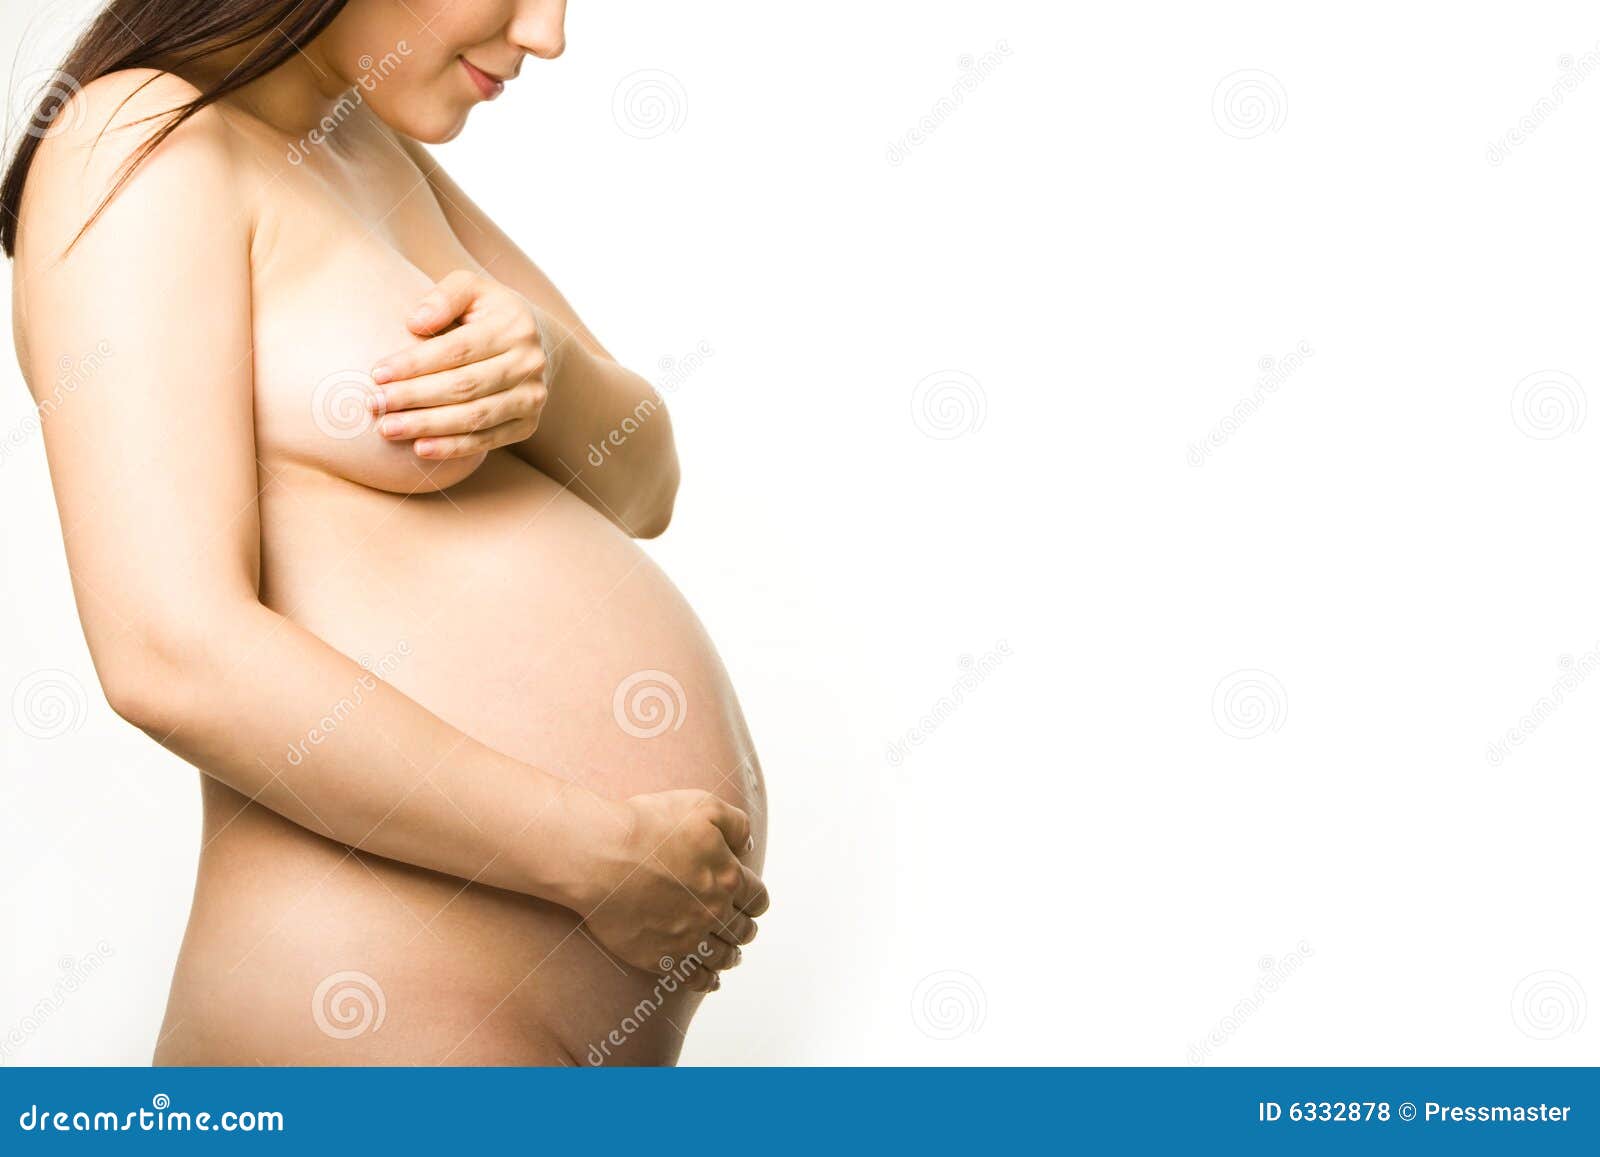 к чему видеть груди беременной фото 87